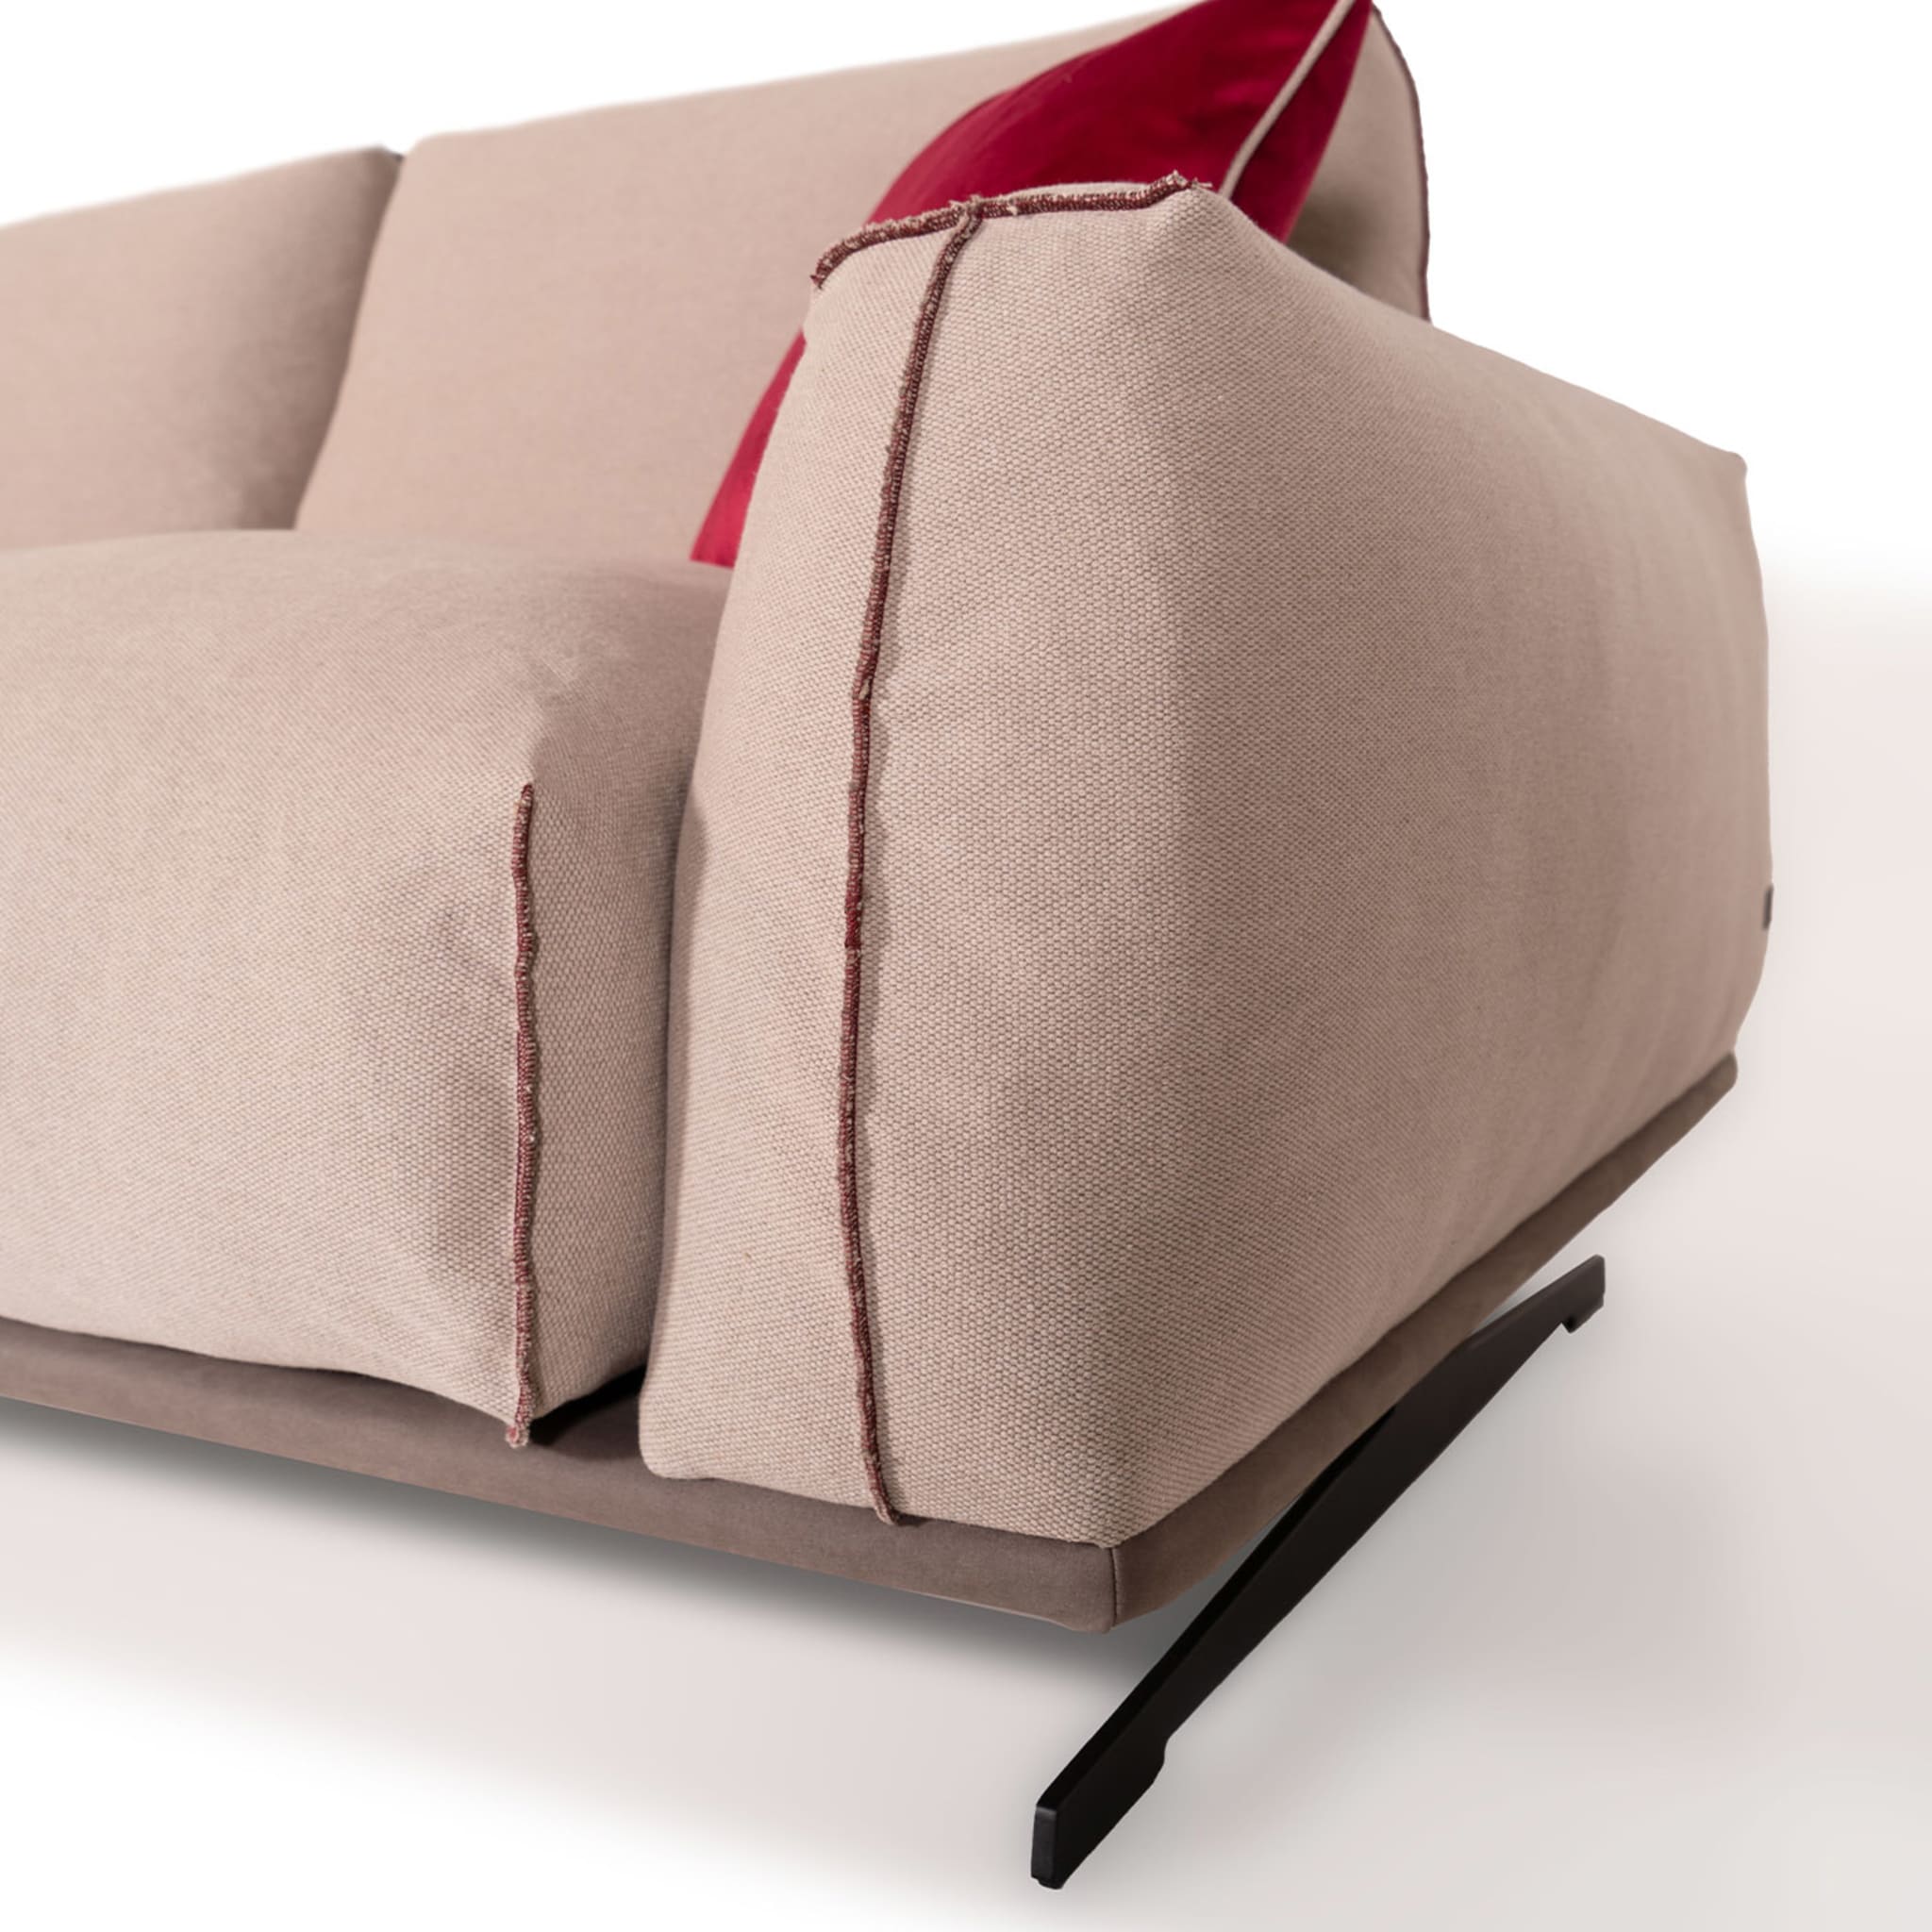 Boboli 2 Seater Sofa by Marco and Giulio Mantellassi - Alternative view 3